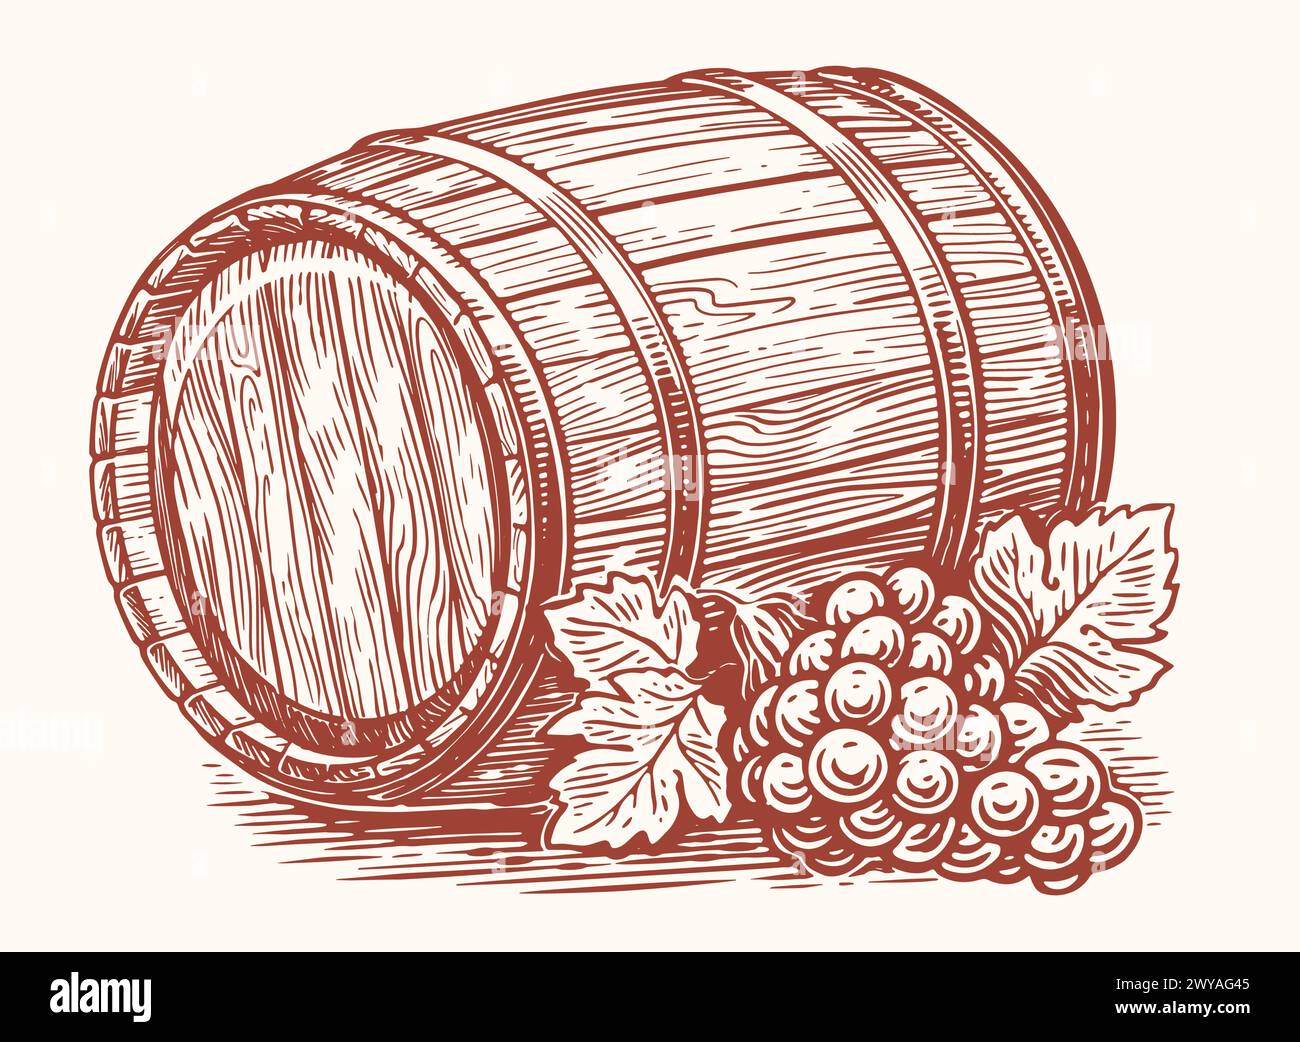 Vieux tonneau en bois et raisins mûrs avec des feuilles. Fût de chêne de vin de boisson alcoolisée. Illustration vectorielle d'esquisse Illustration de Vecteur